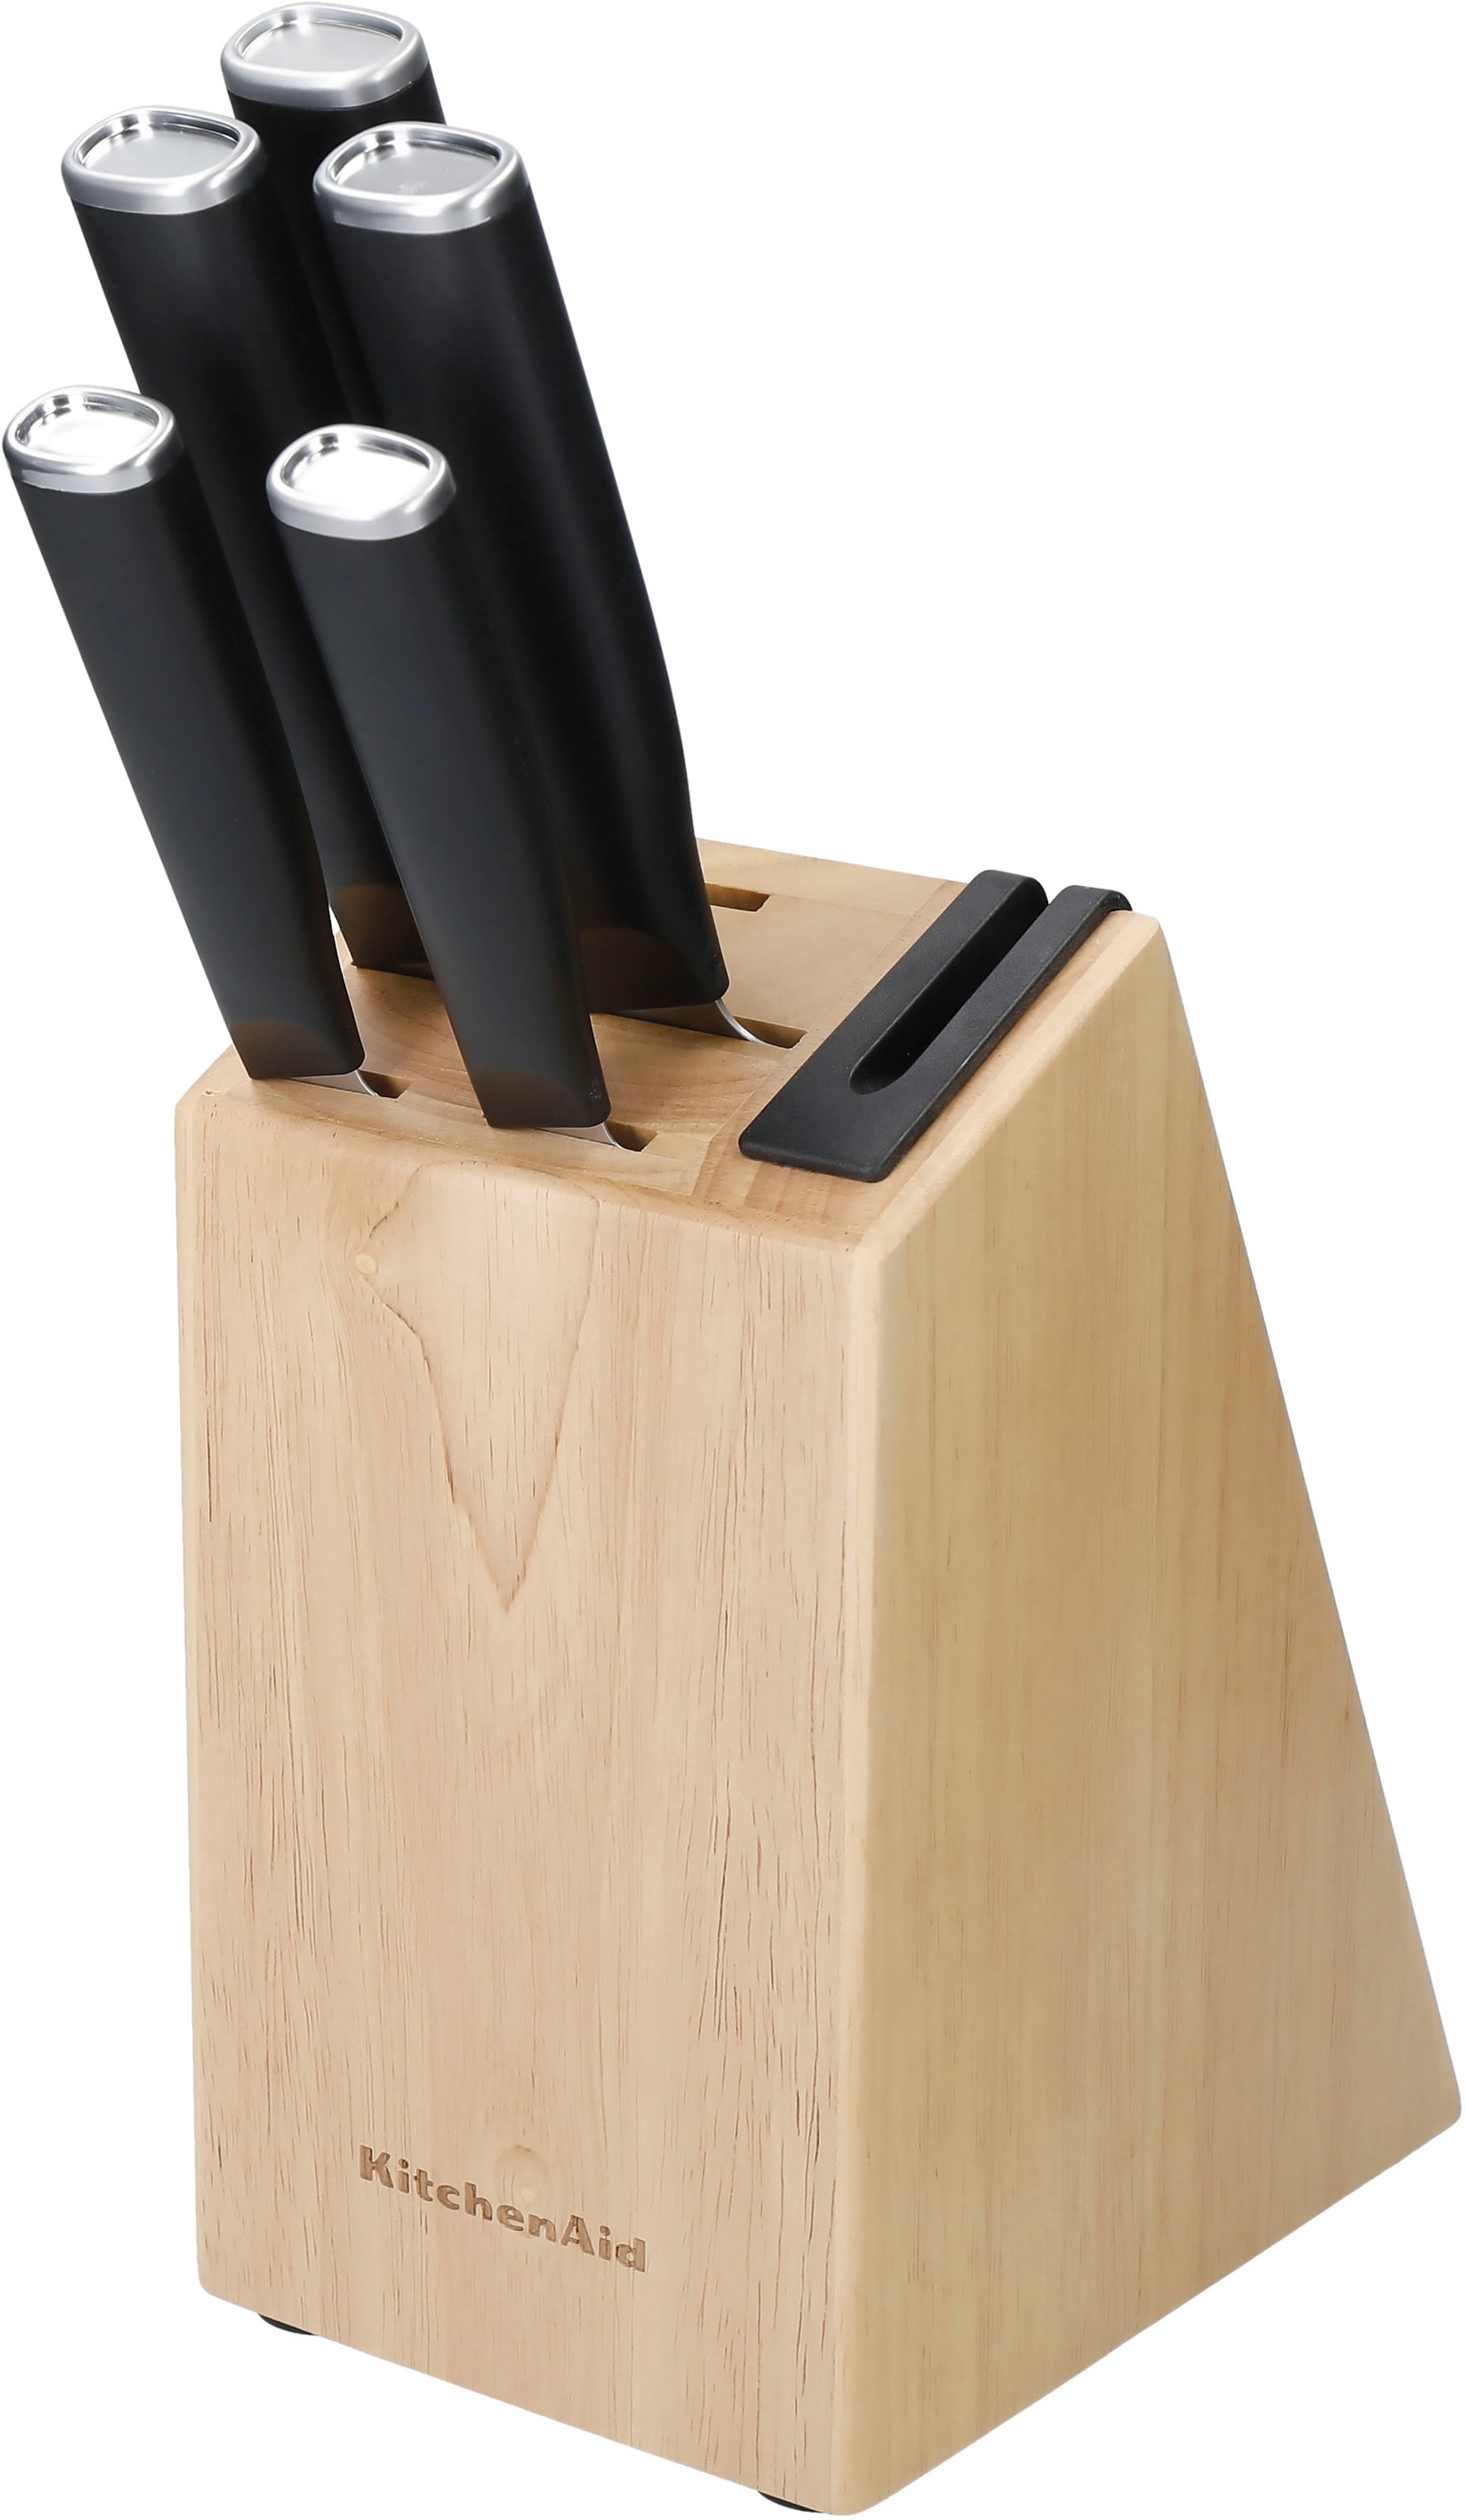 KitchenAid Messerblock »Classic«, 5 tlg., Messer japanischer Stahl, Schärfer, Birkenholzblock